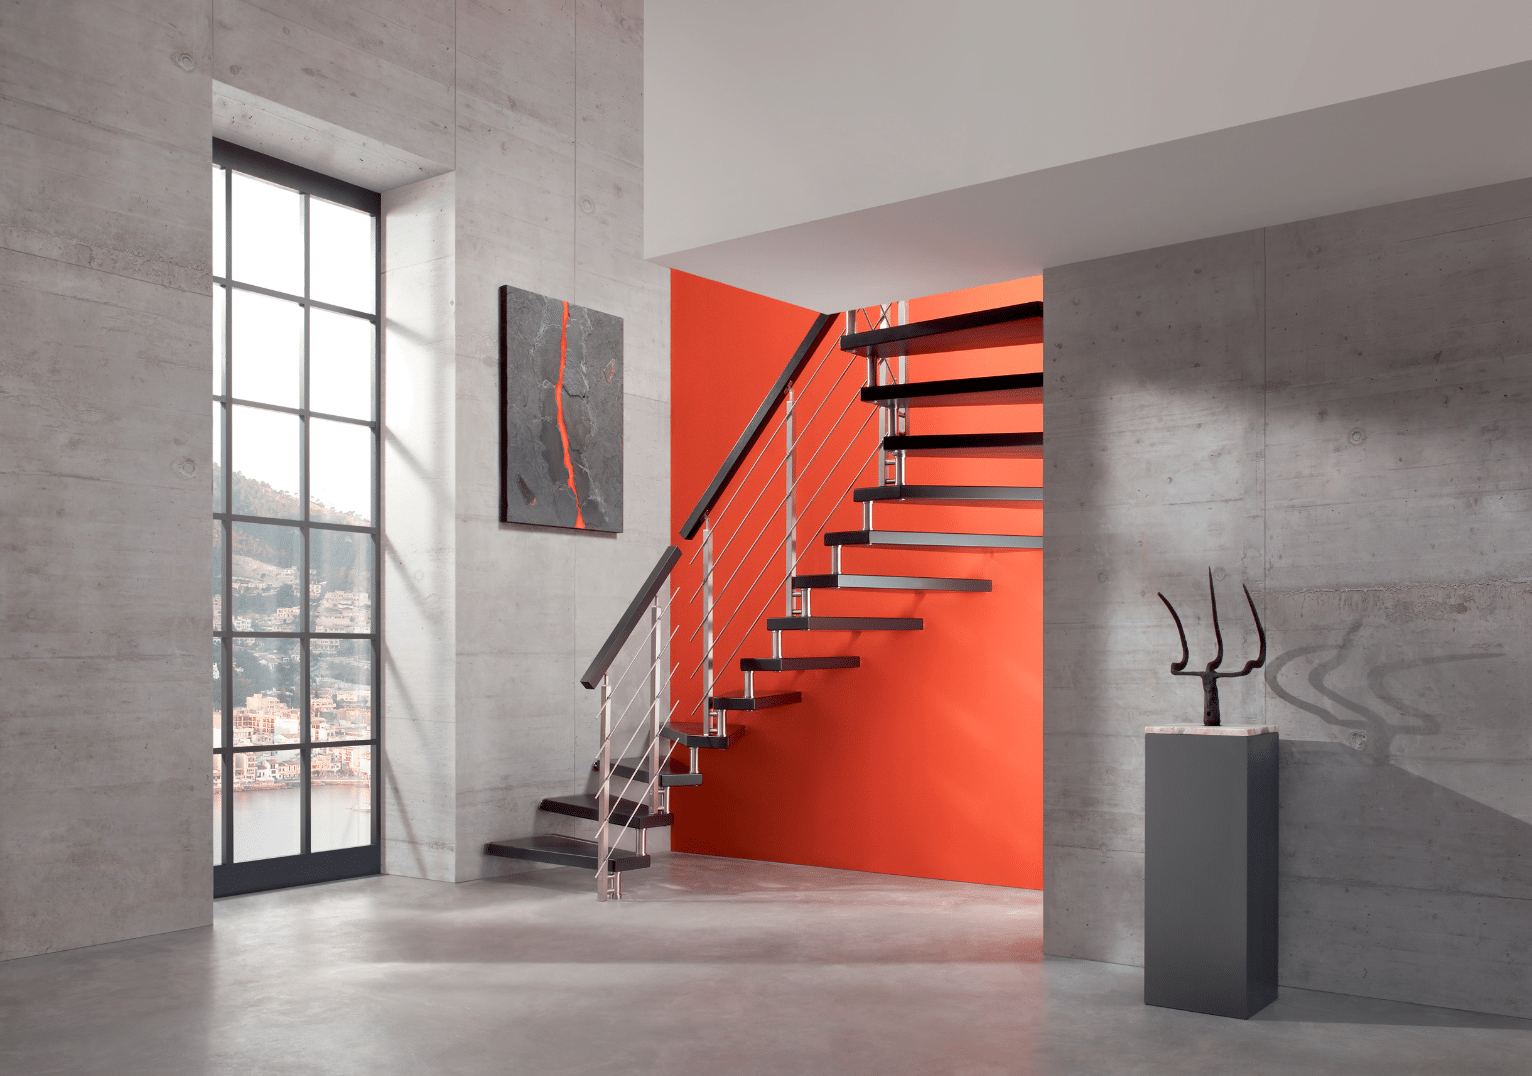 Treppenmeister zeigt eine Galerie mit zurückhaltend elegantem Treppenaufgang in schwarz und silber, vor eine roten Wand.